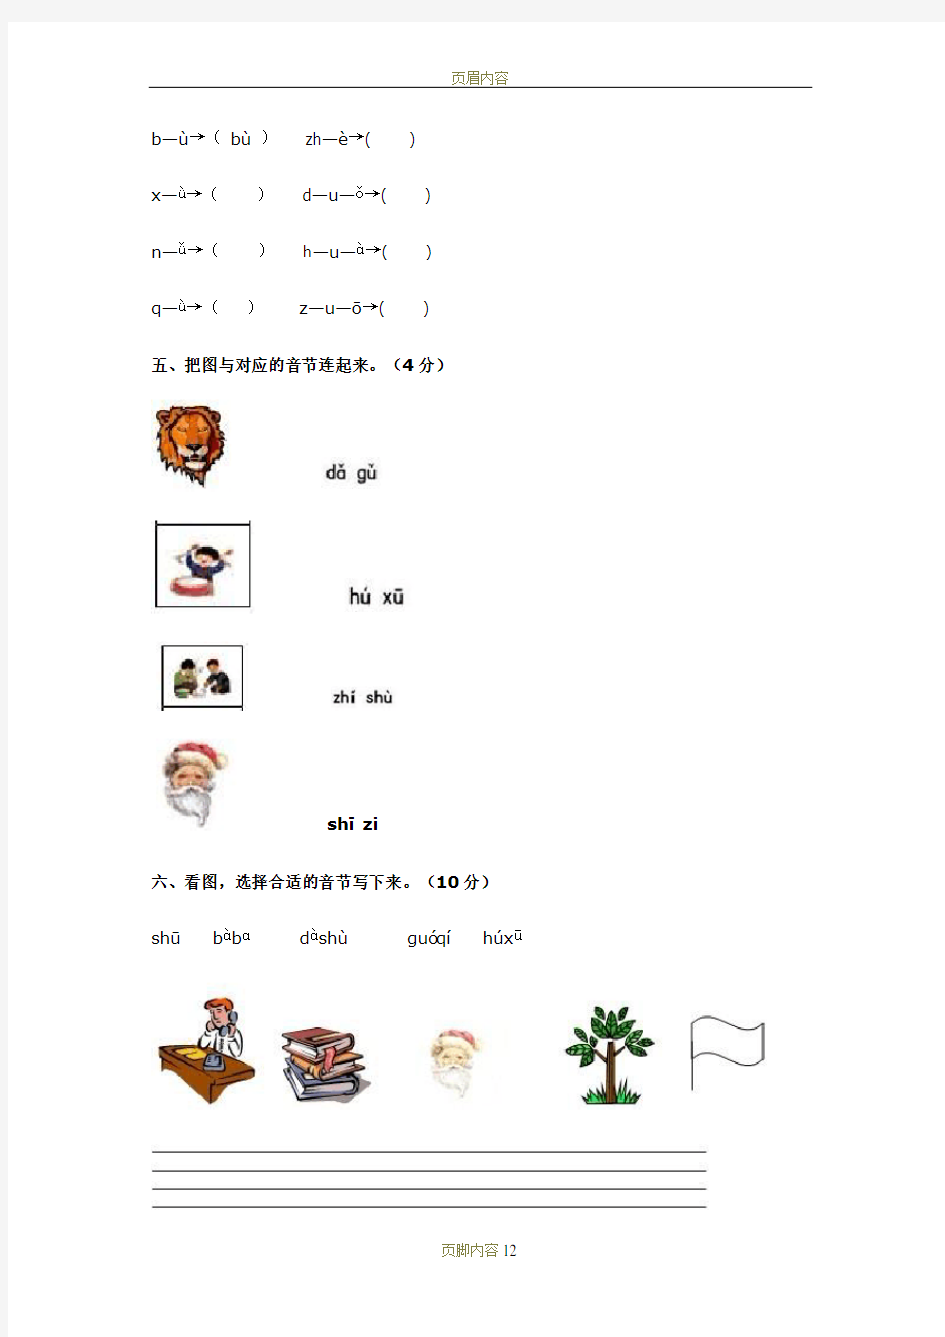 汉语拼音测试题